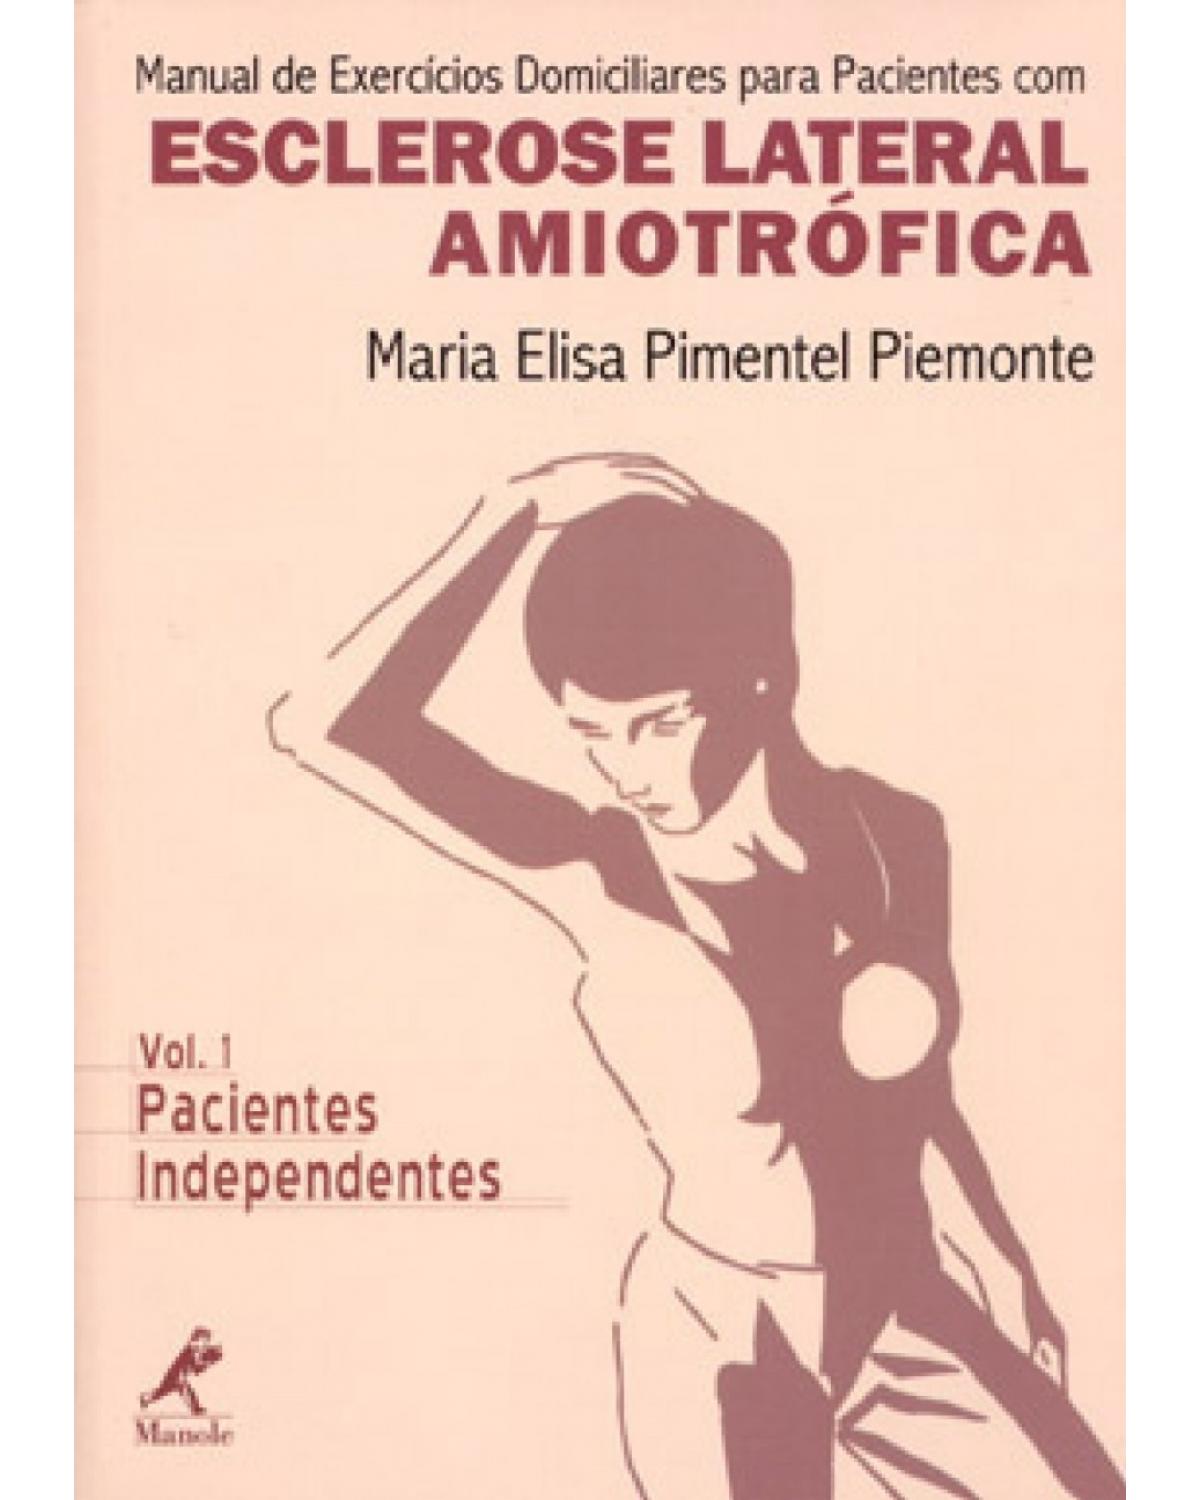 Manual de exercícios domiciliares para pacientes com esclerose lateral amiotrófica - Volume 1: pacientes independentes - 1ª Edição | 2001